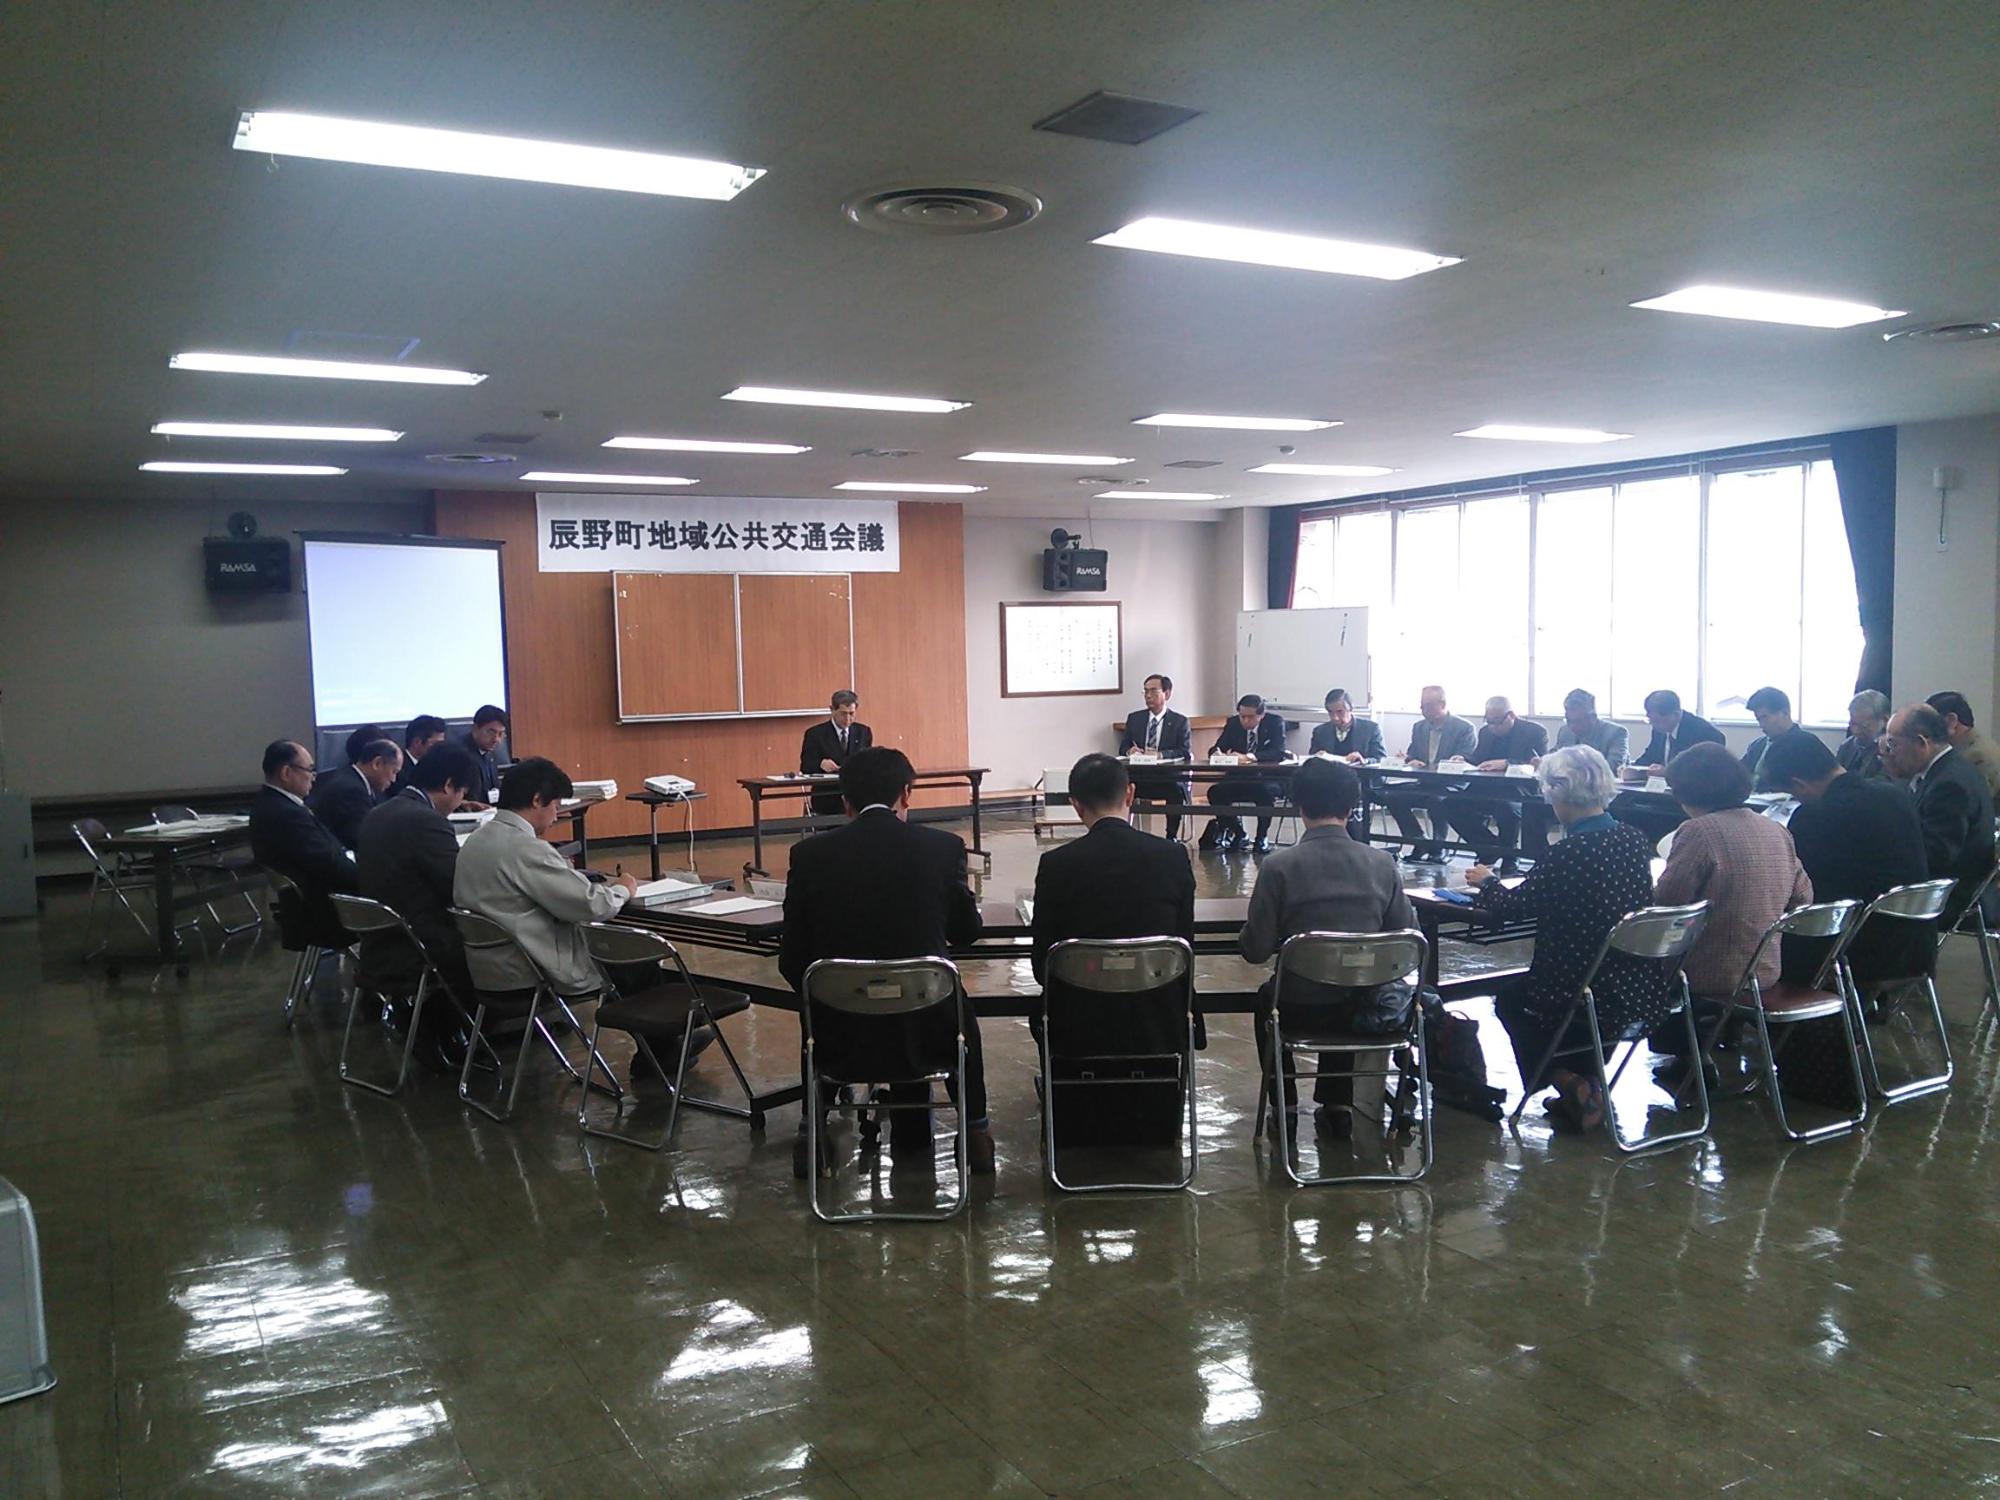 辰野町地域公共交通会議の垂れ幕が下がった部屋でたくさんの人がテーブルを囲っている写真